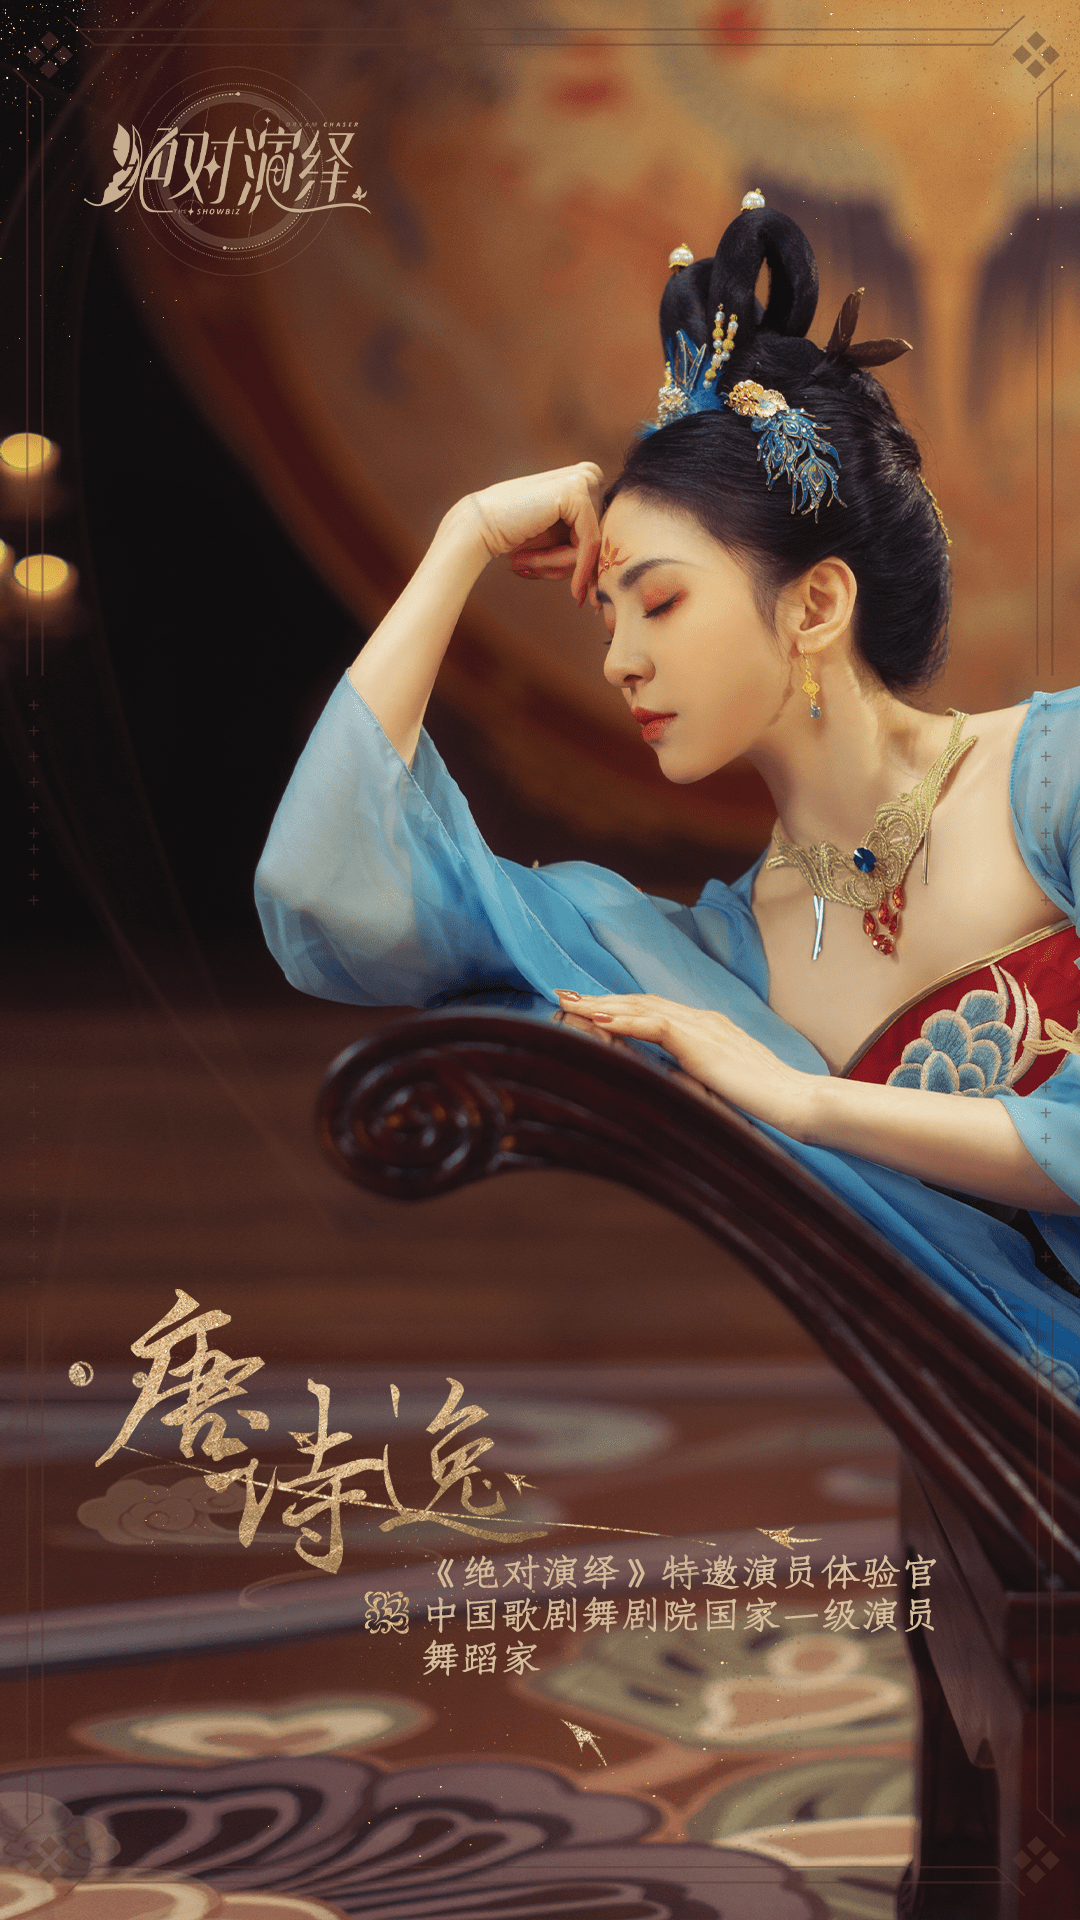 绝美舞姿回顾:《浪姐3》热门选手唐诗逸,曾在绝对演绎中cos公主李裹儿